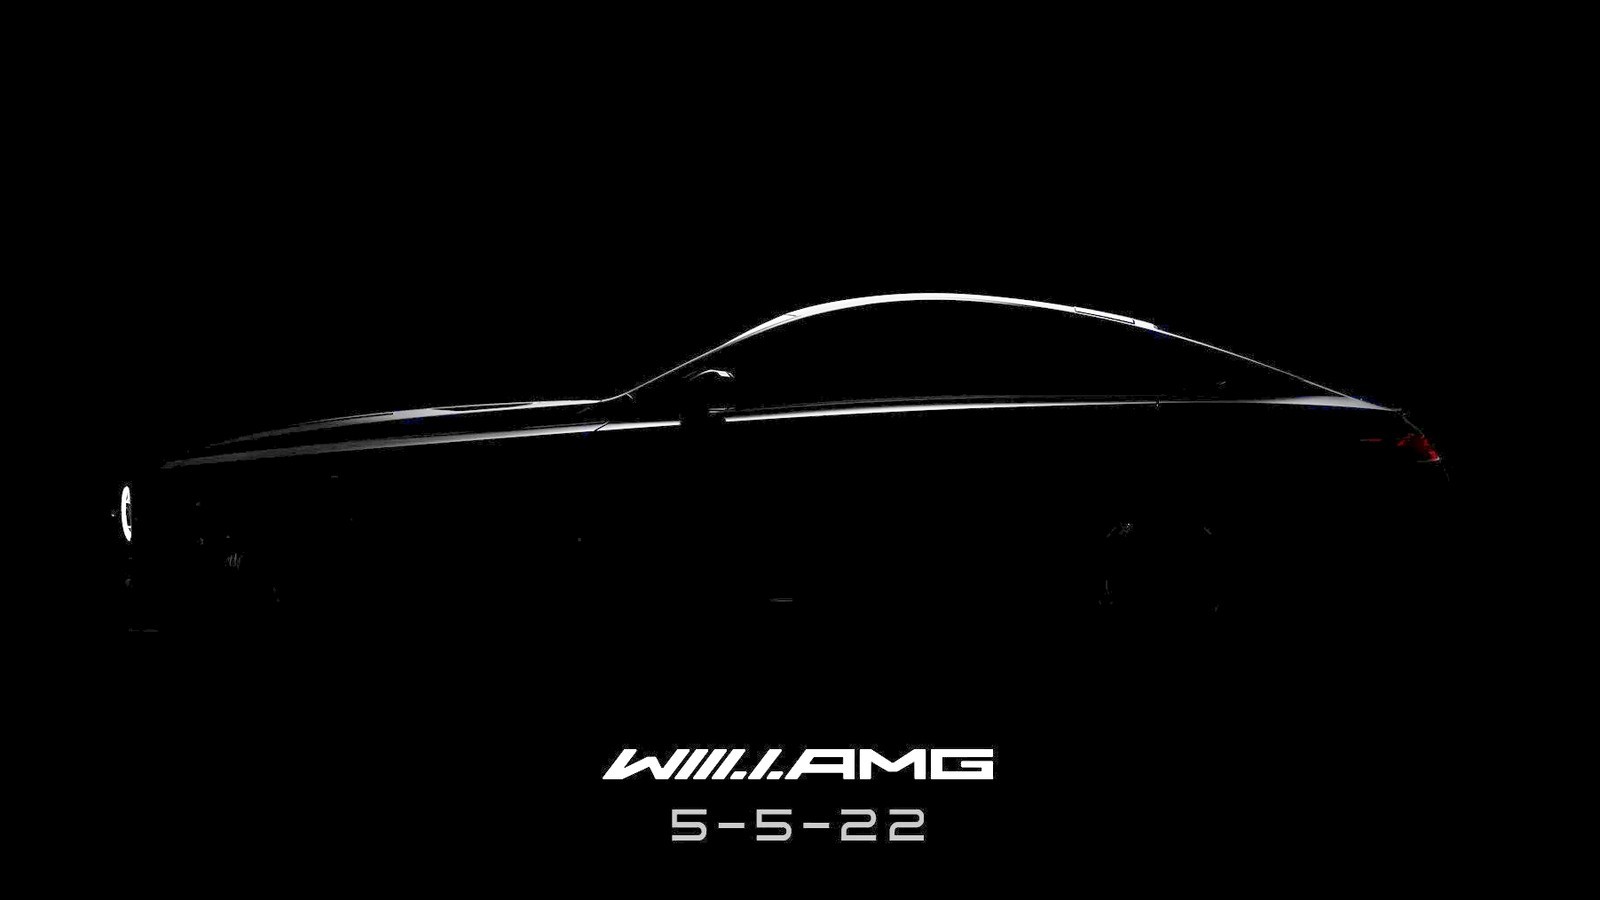 Mercedes-AMG анонсировал купе с лицом «гелика»: дизайн от рэпера и «суицидальные» двери